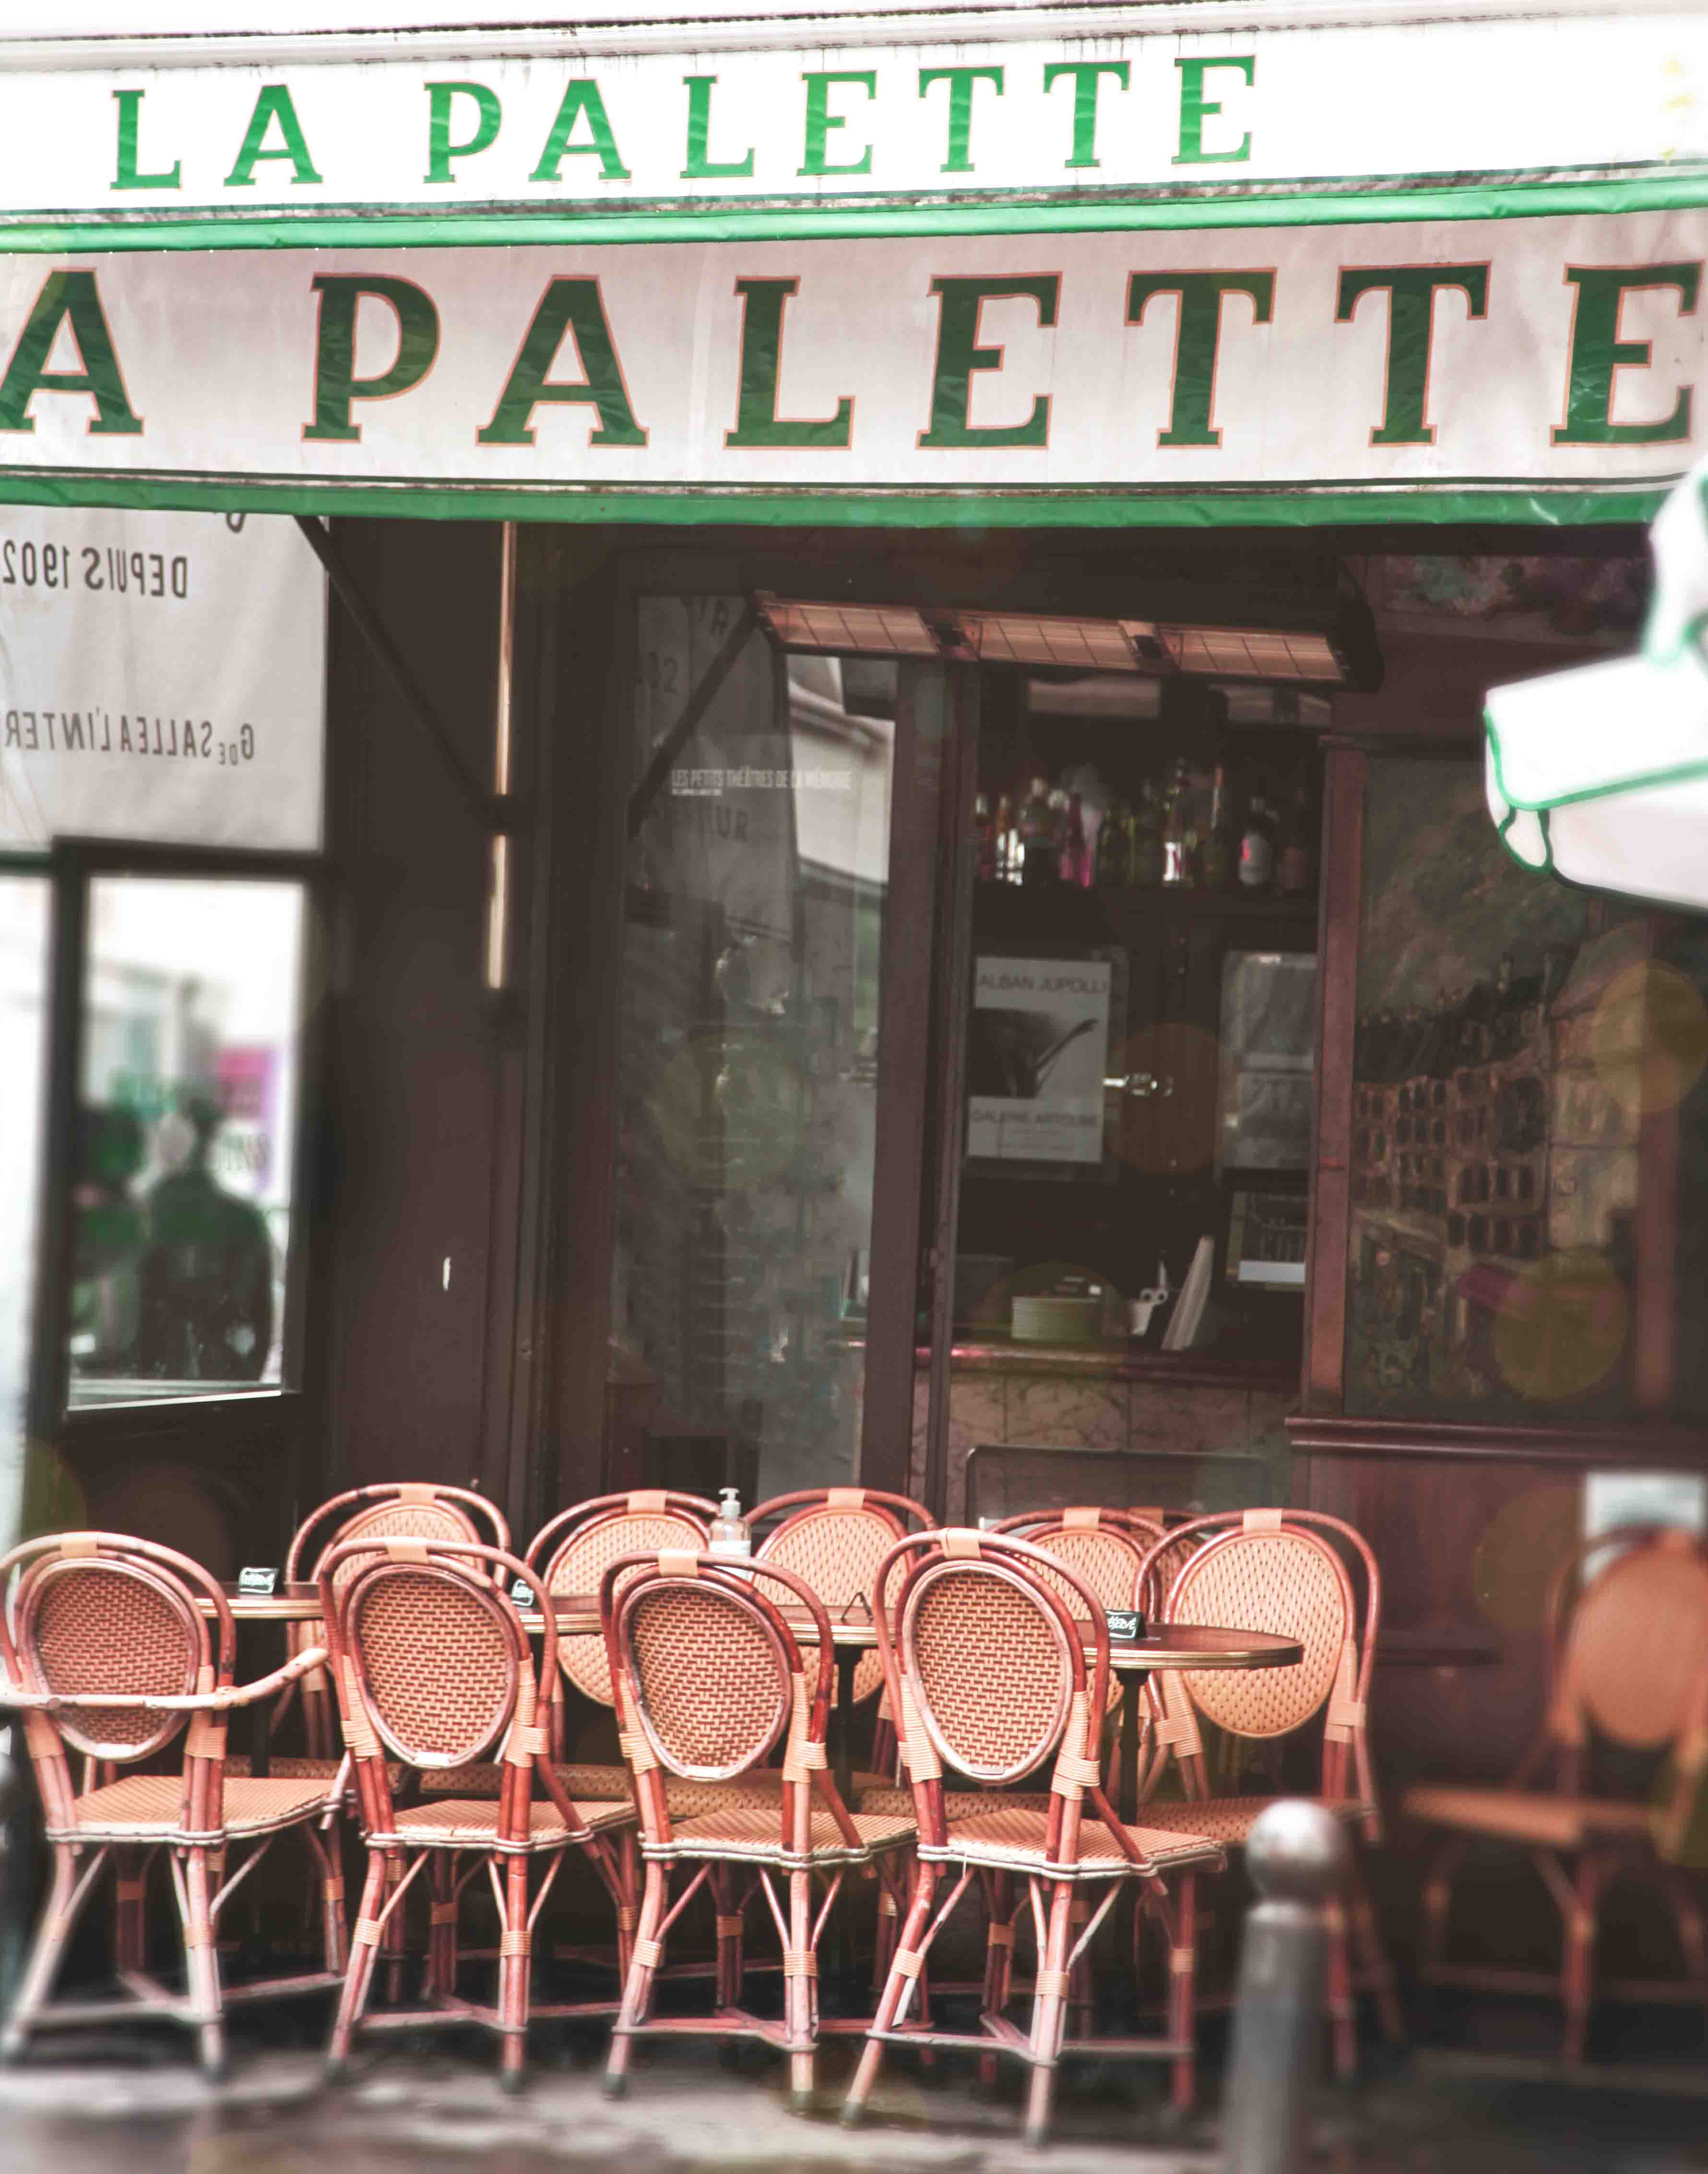 La palette, the mythic restaurant of Saint-Germain des Prés